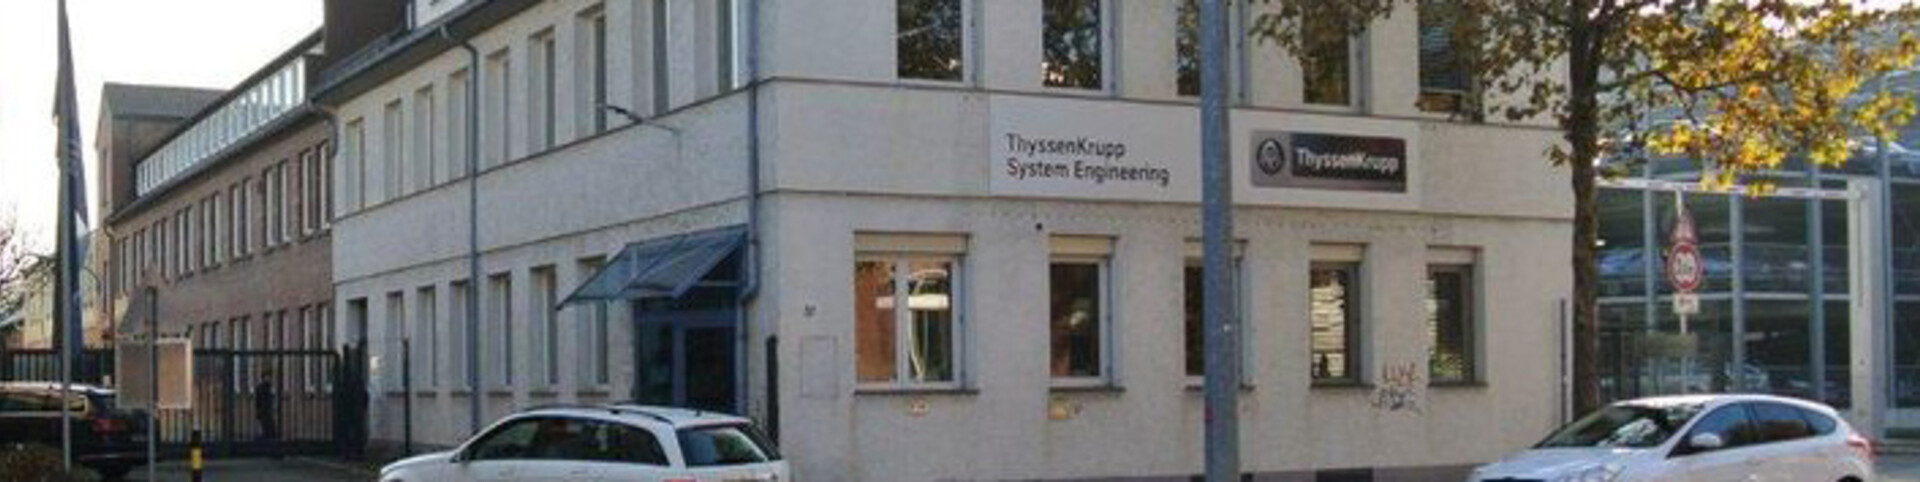 thyssenkrupp_hero-banner-office-building